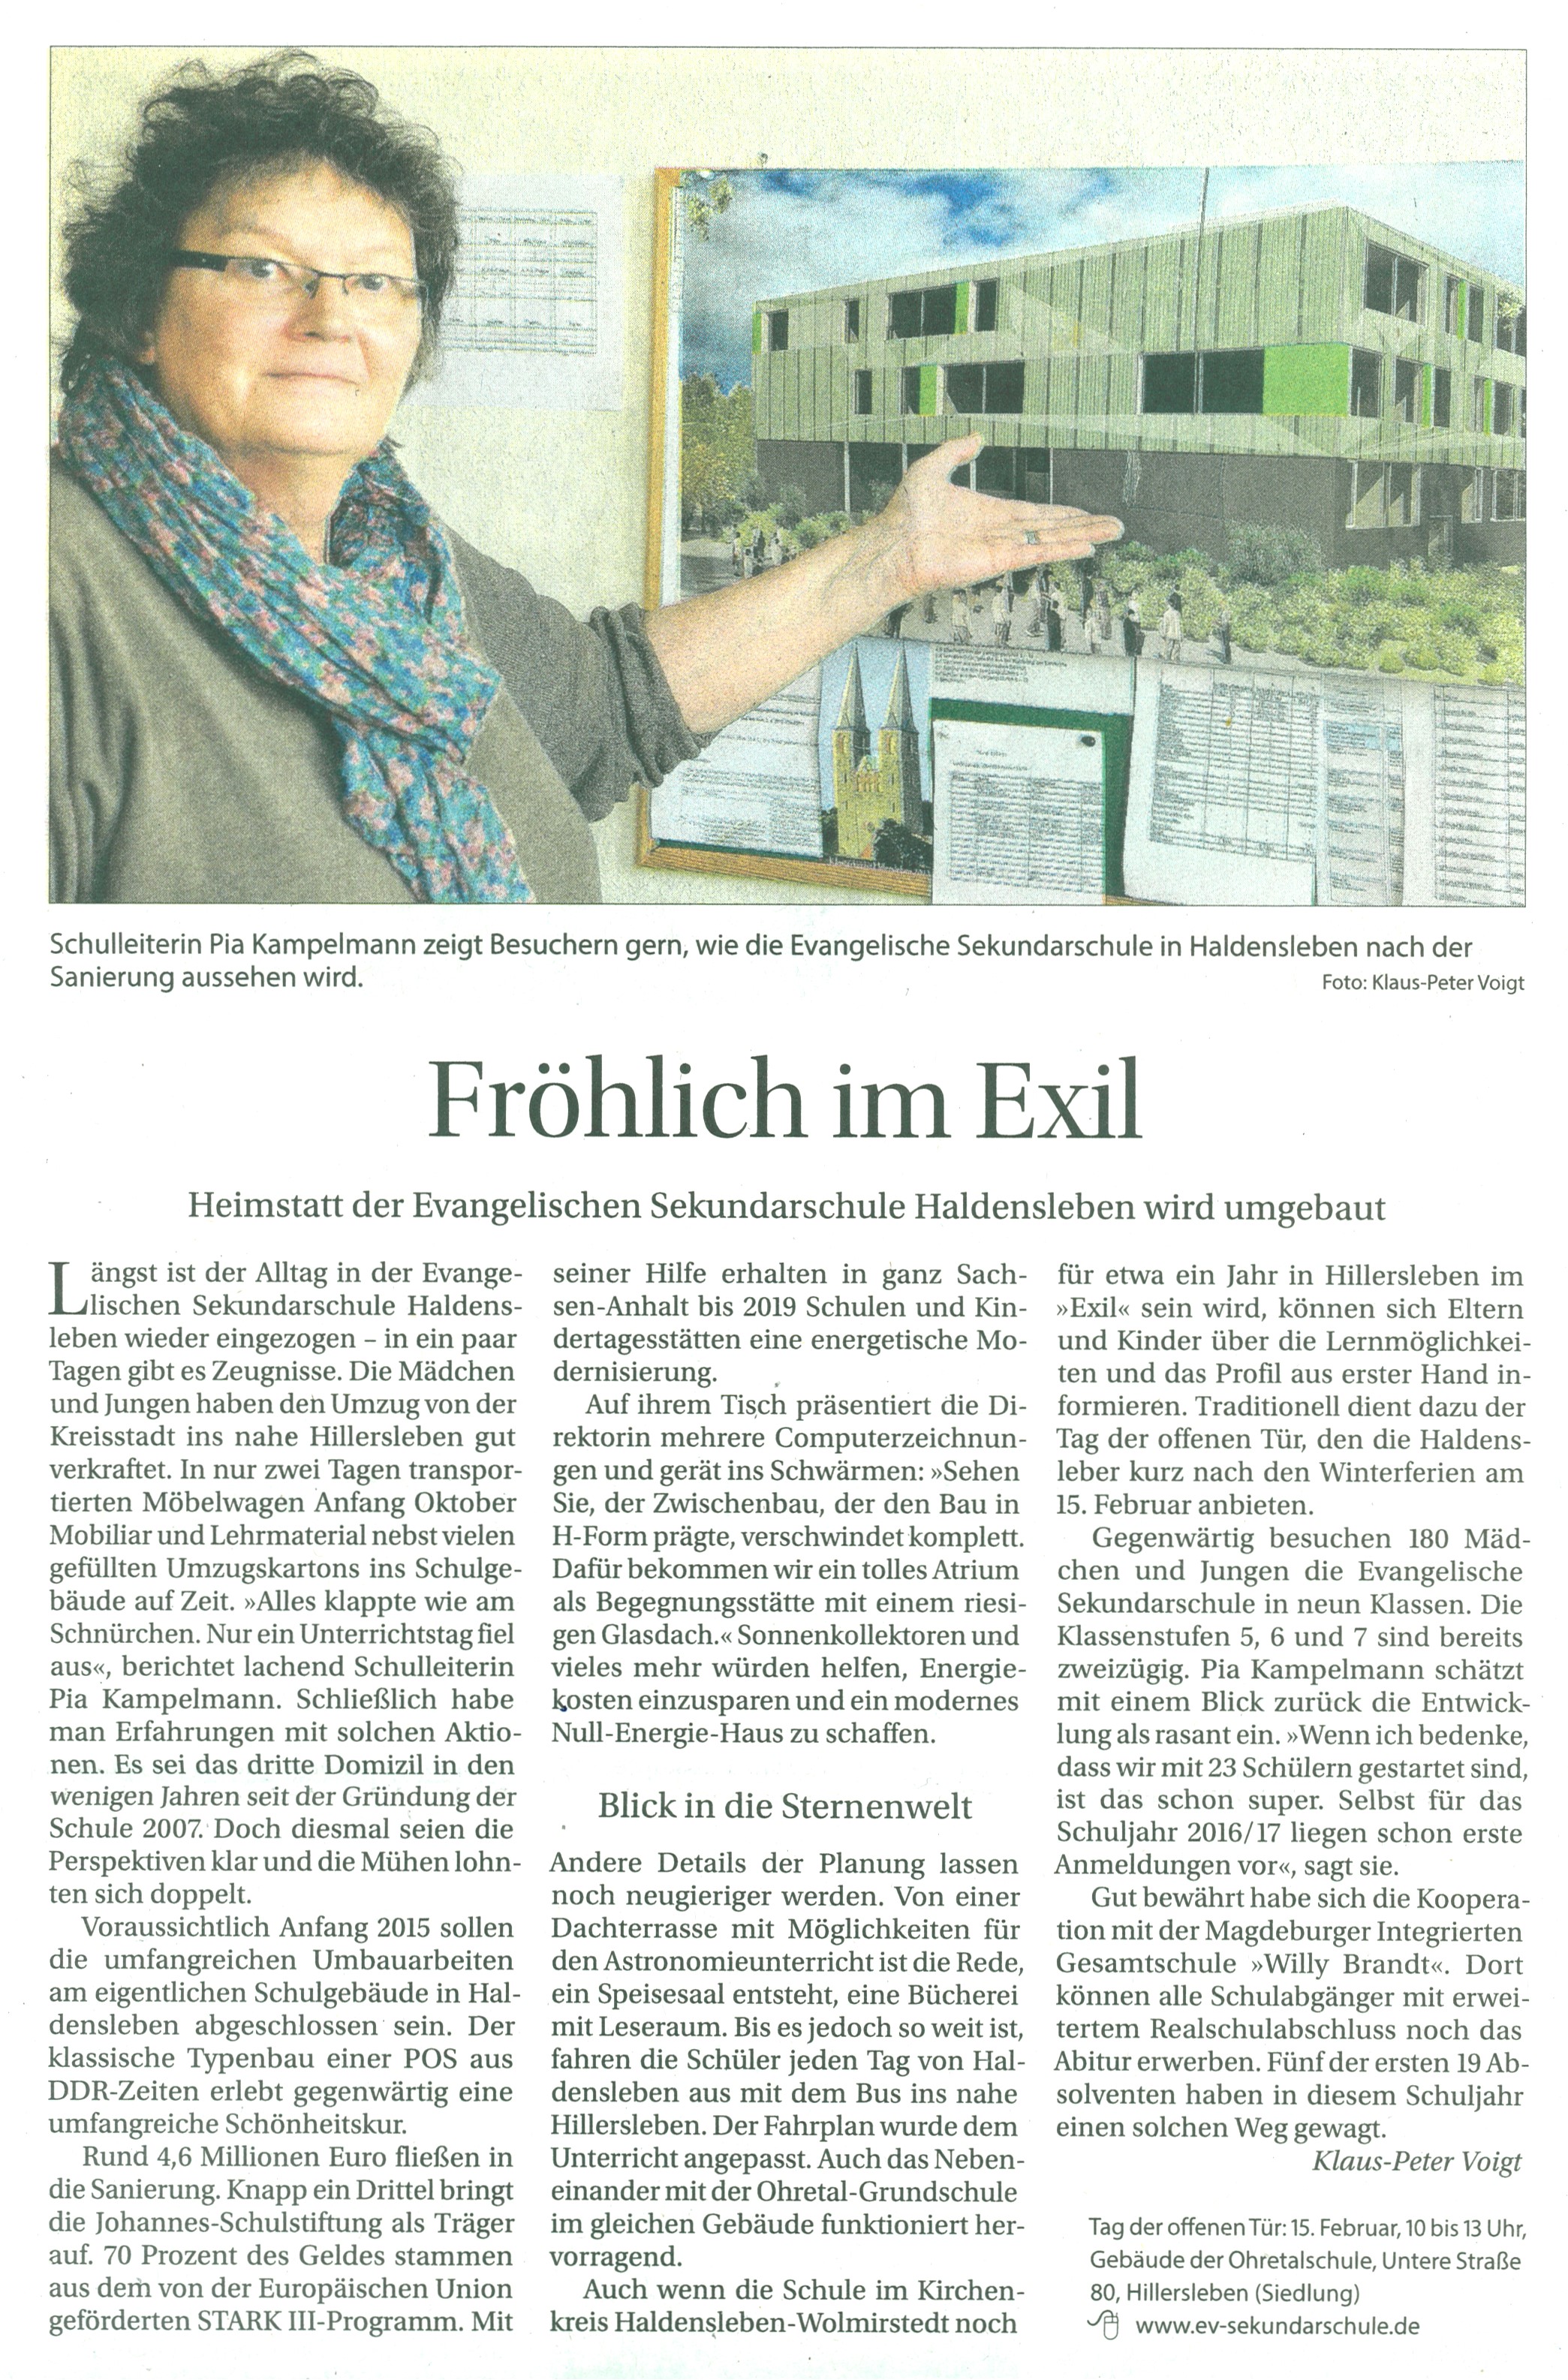  Glaube und Heimat 26. 1. 2014